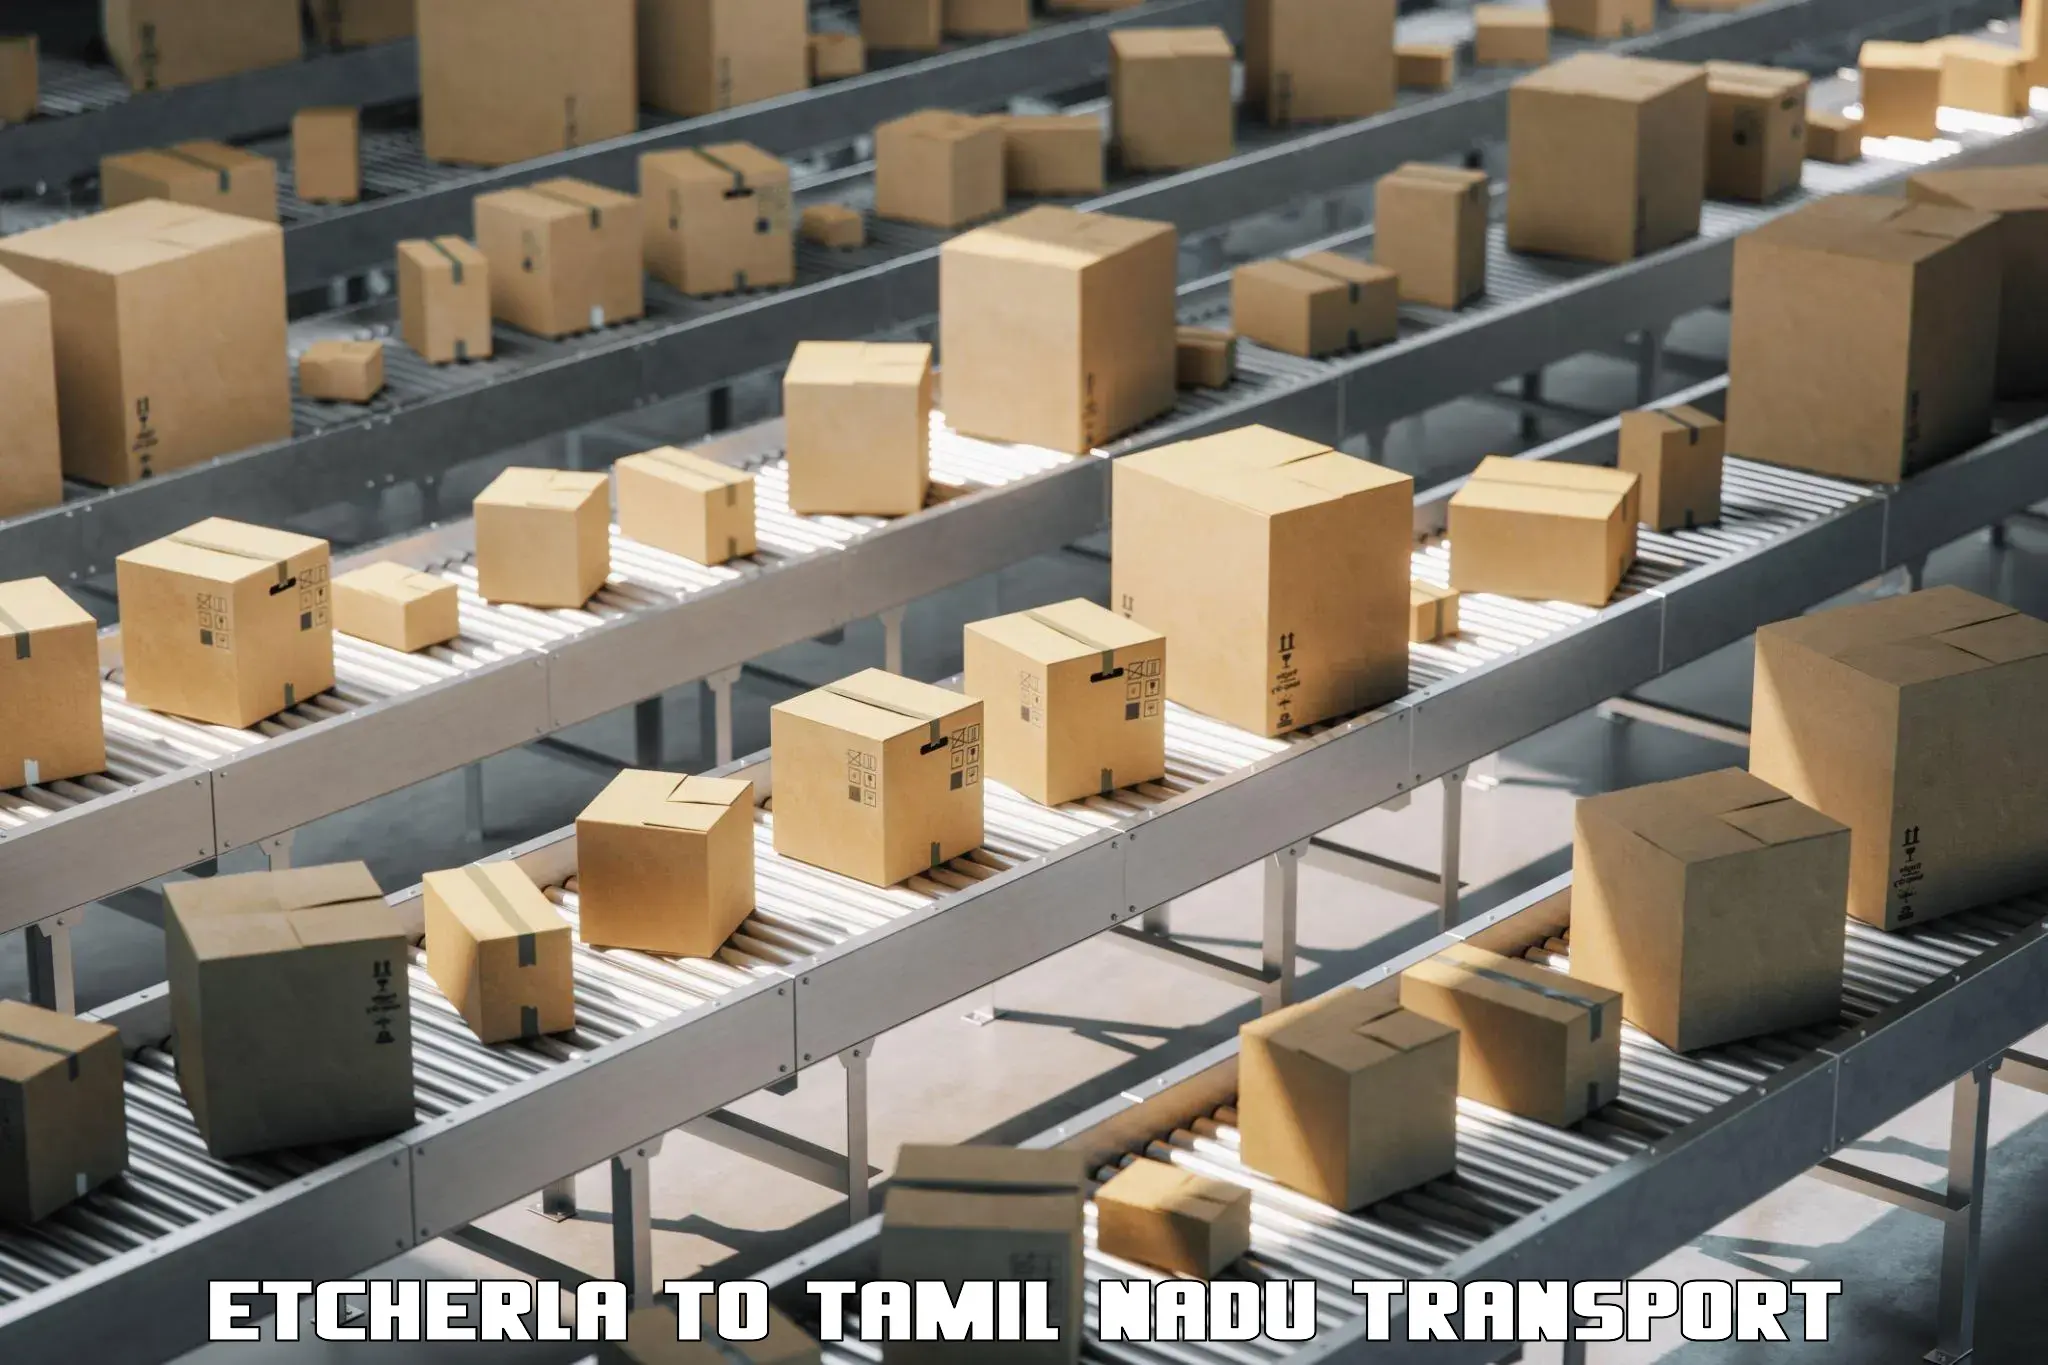 Daily parcel service transport Etcherla to Tamil Nadu